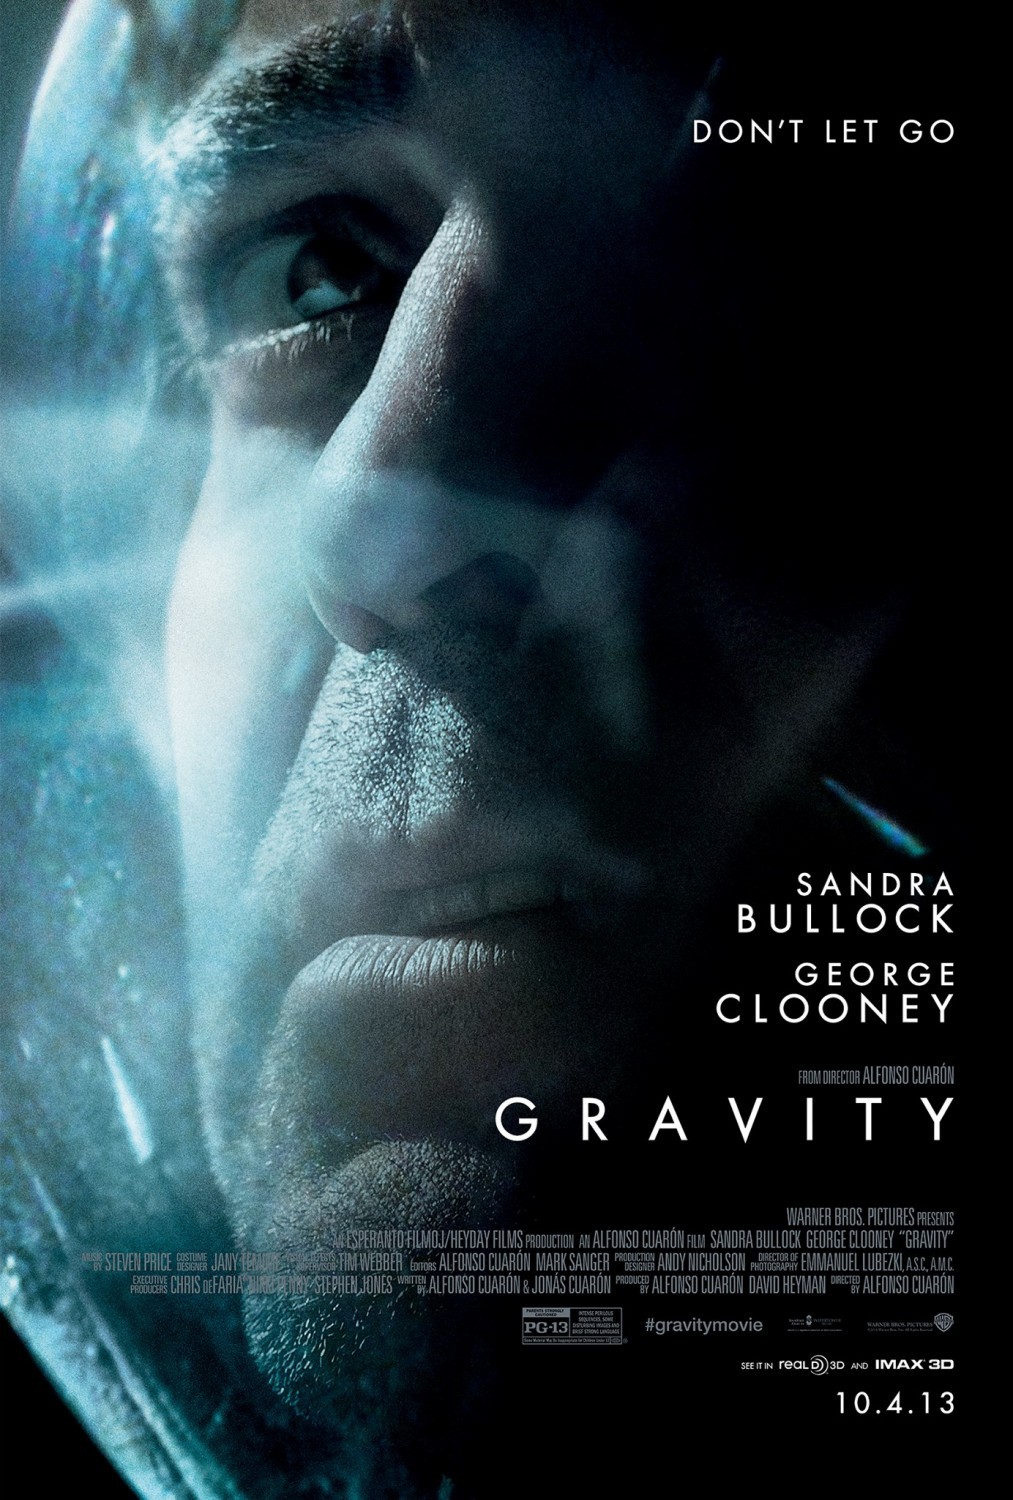 Film Gravitaciya Gravity 2013 Trejlery Data Vyhoda Kg Portal